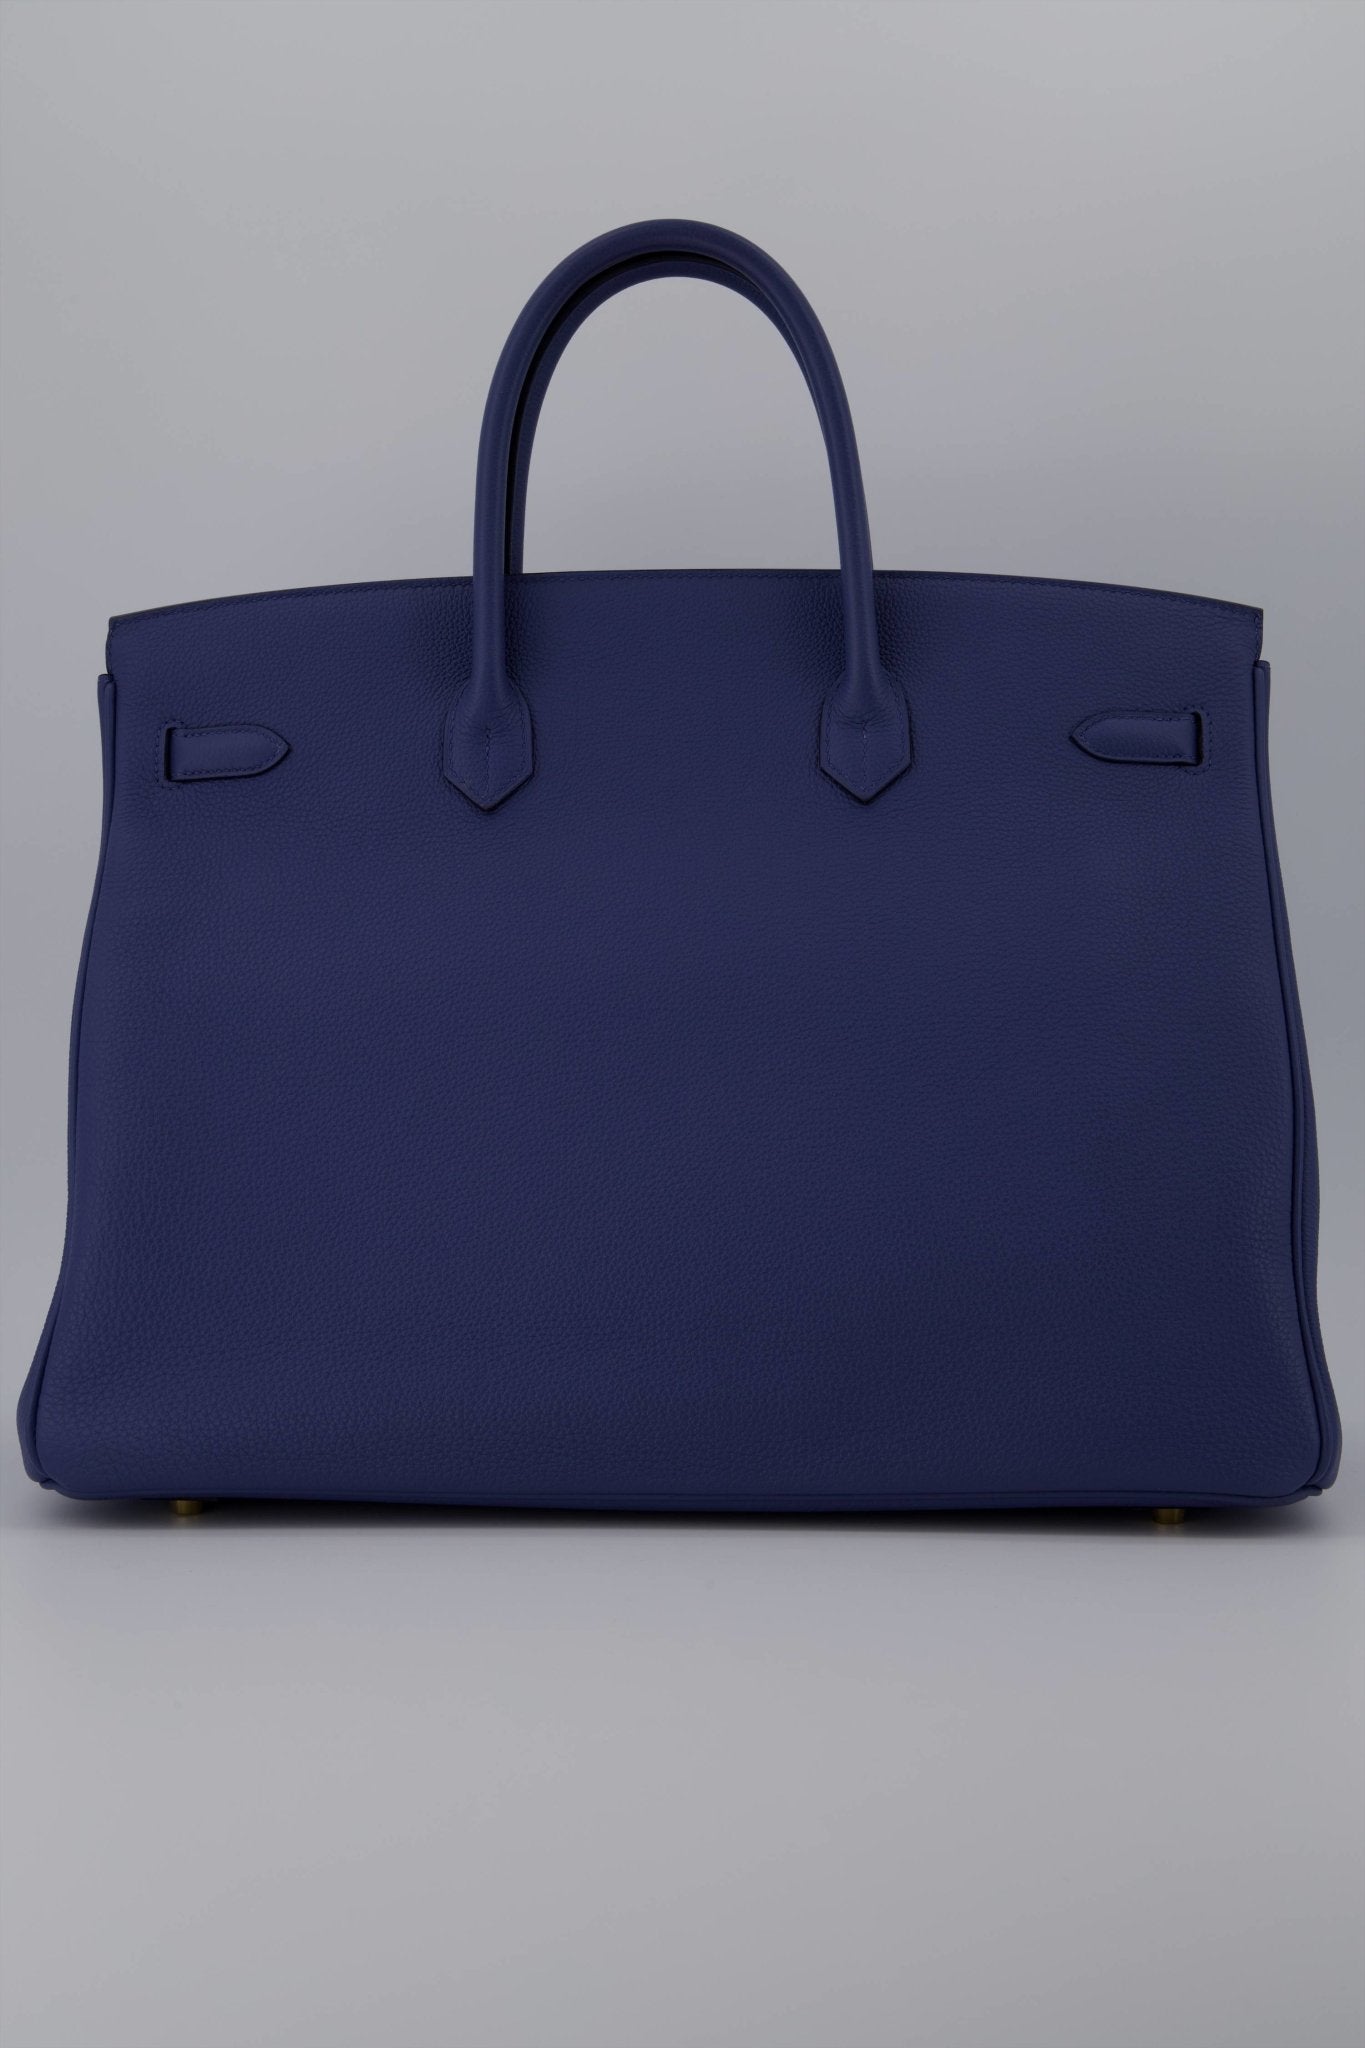 Hermes Birkin 30 cm Handbag in Bleu France Togo Leather